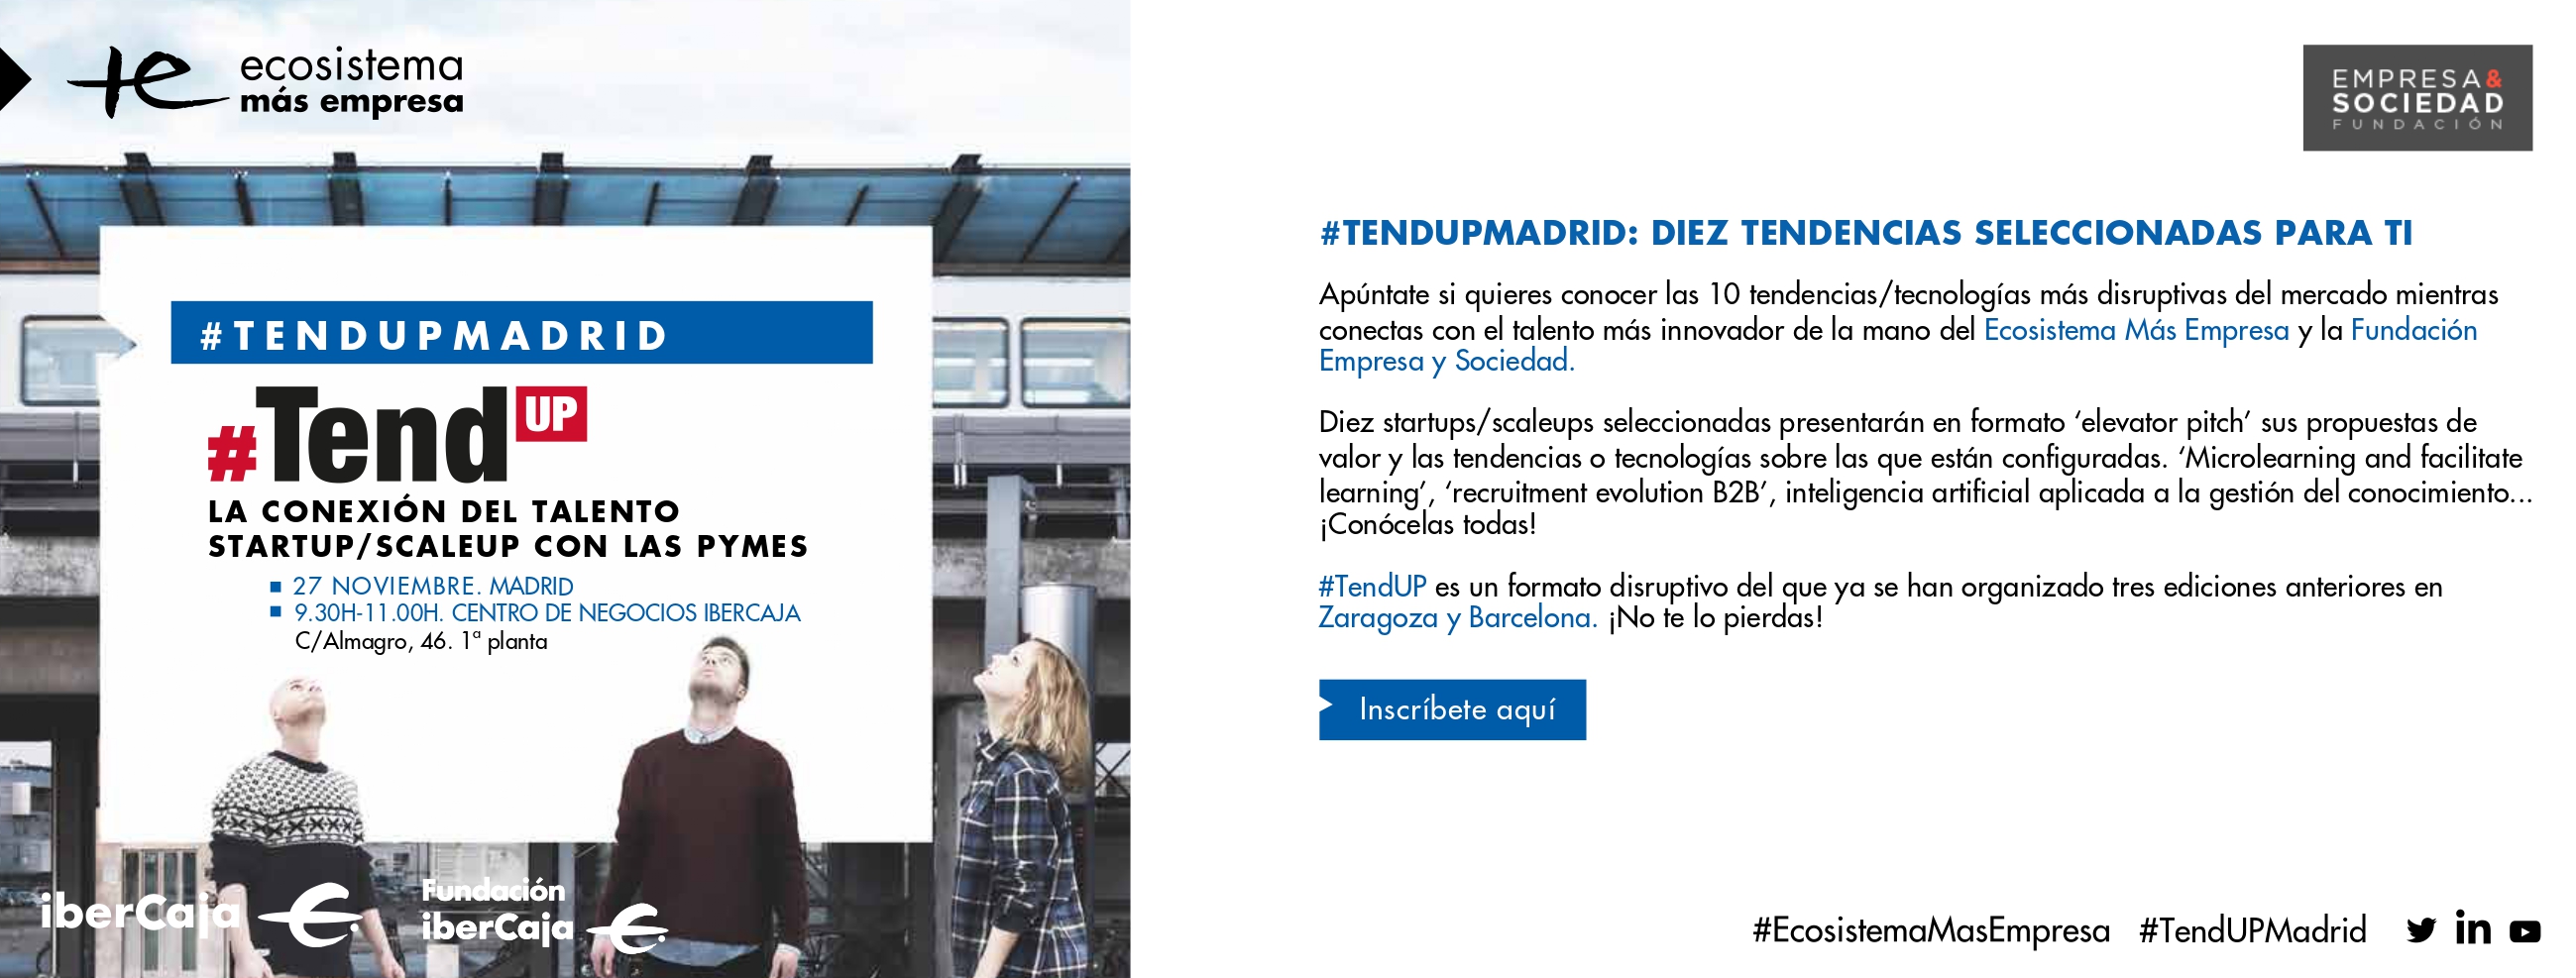 Ecosistema y la Fundación Empresa y Sociedad organizan #TendUPMadrid